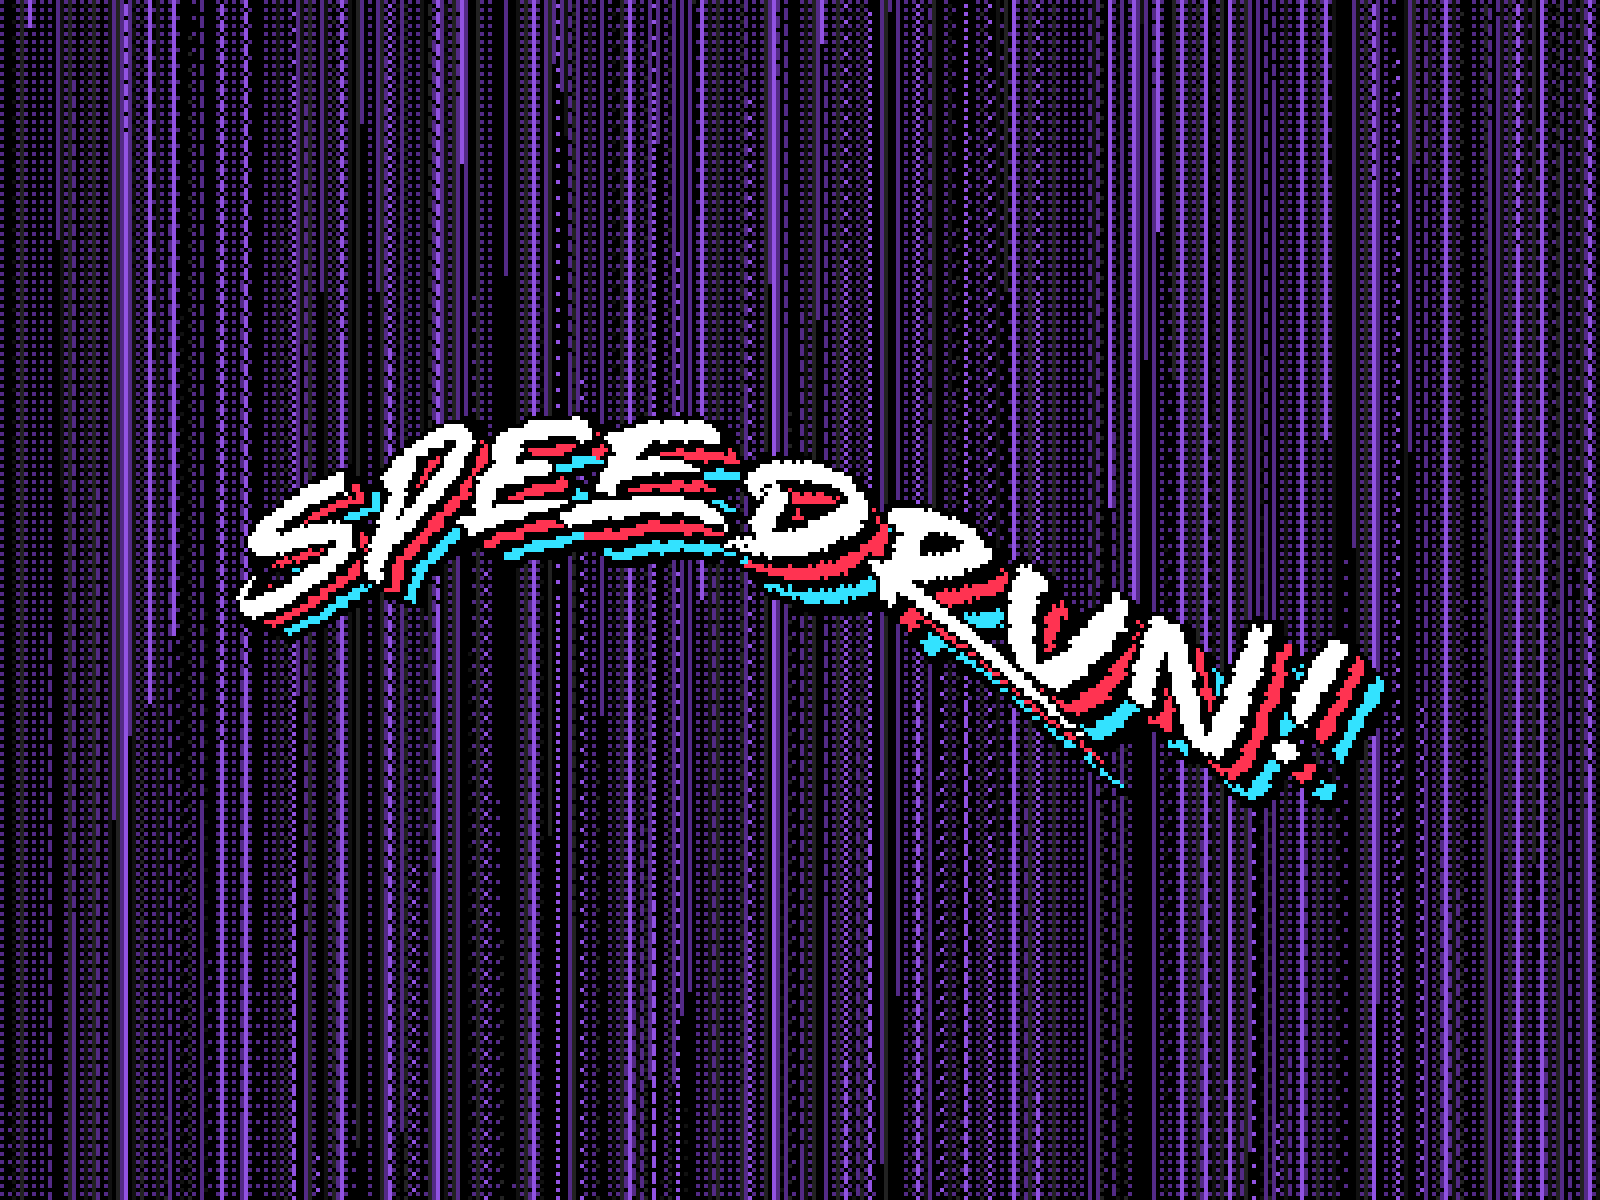 Car drawing game - Speedrun